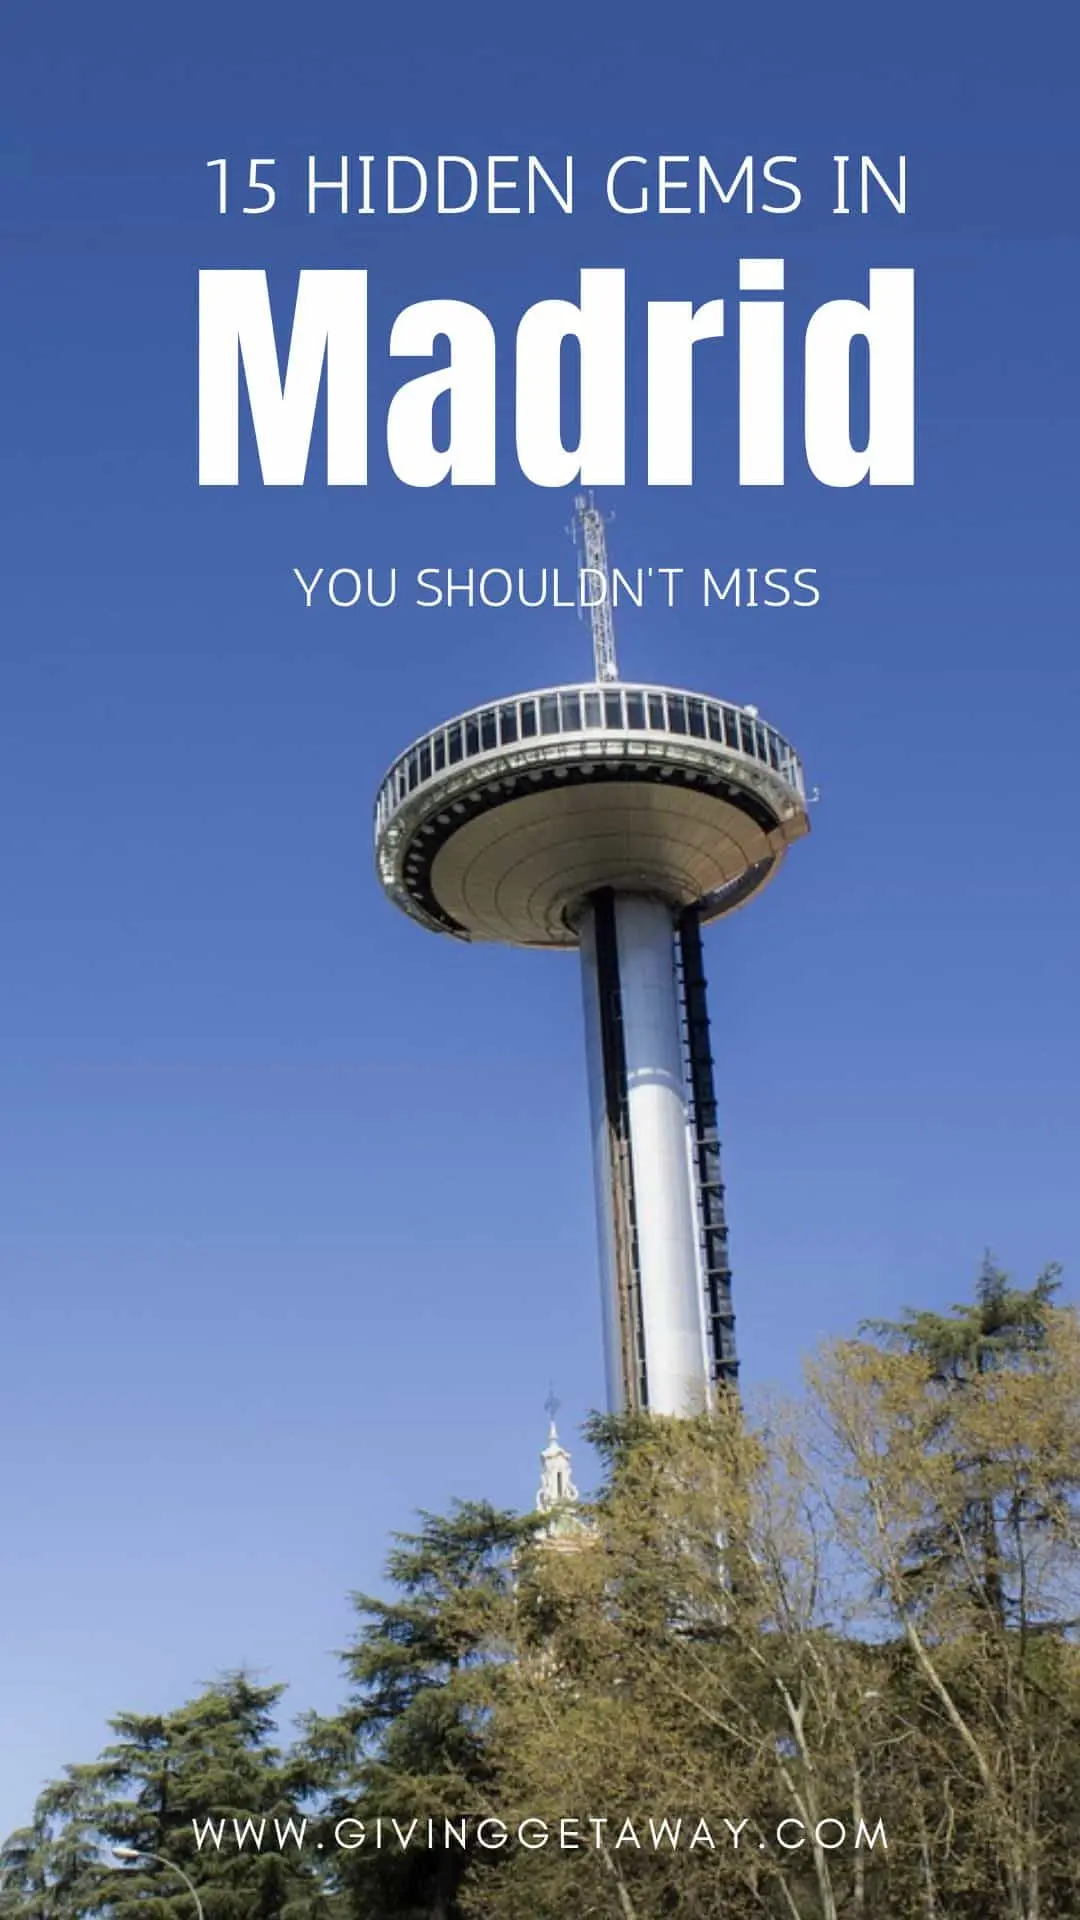 SecretosdeMadrid on X: ¡Presentación de MadridManía! 📕 Este